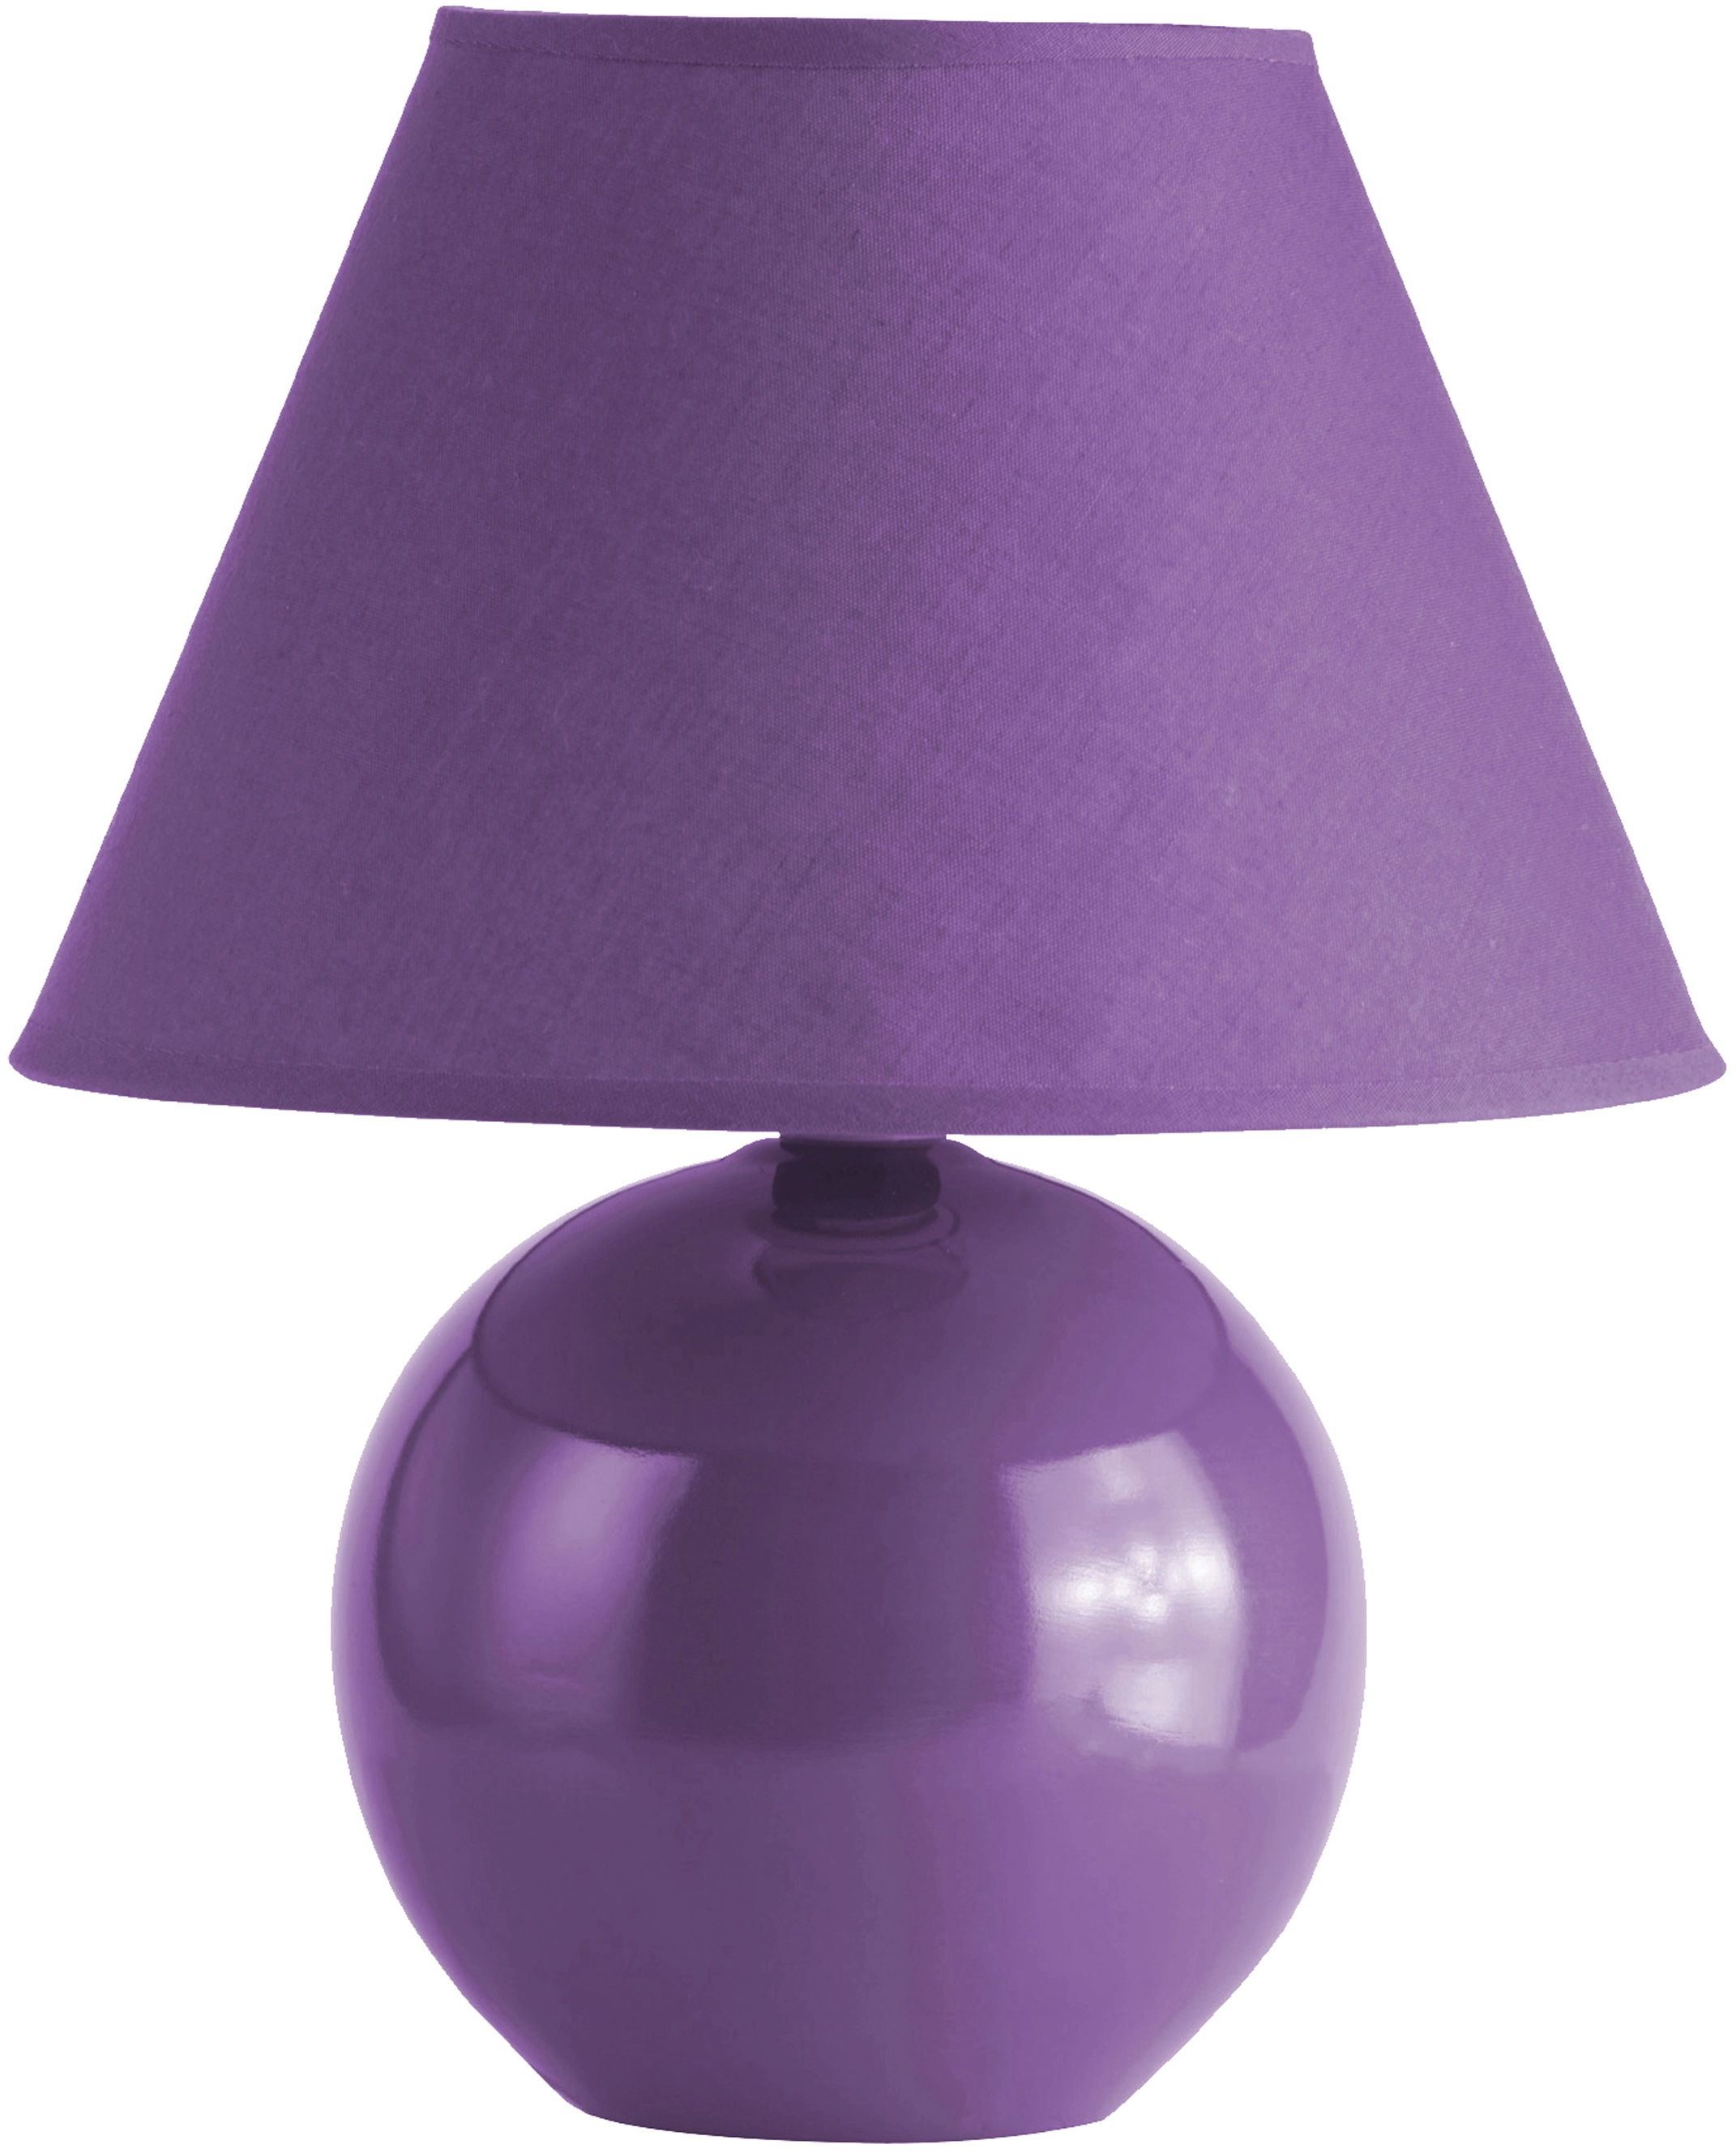 Tischleuchte Violett Keramik